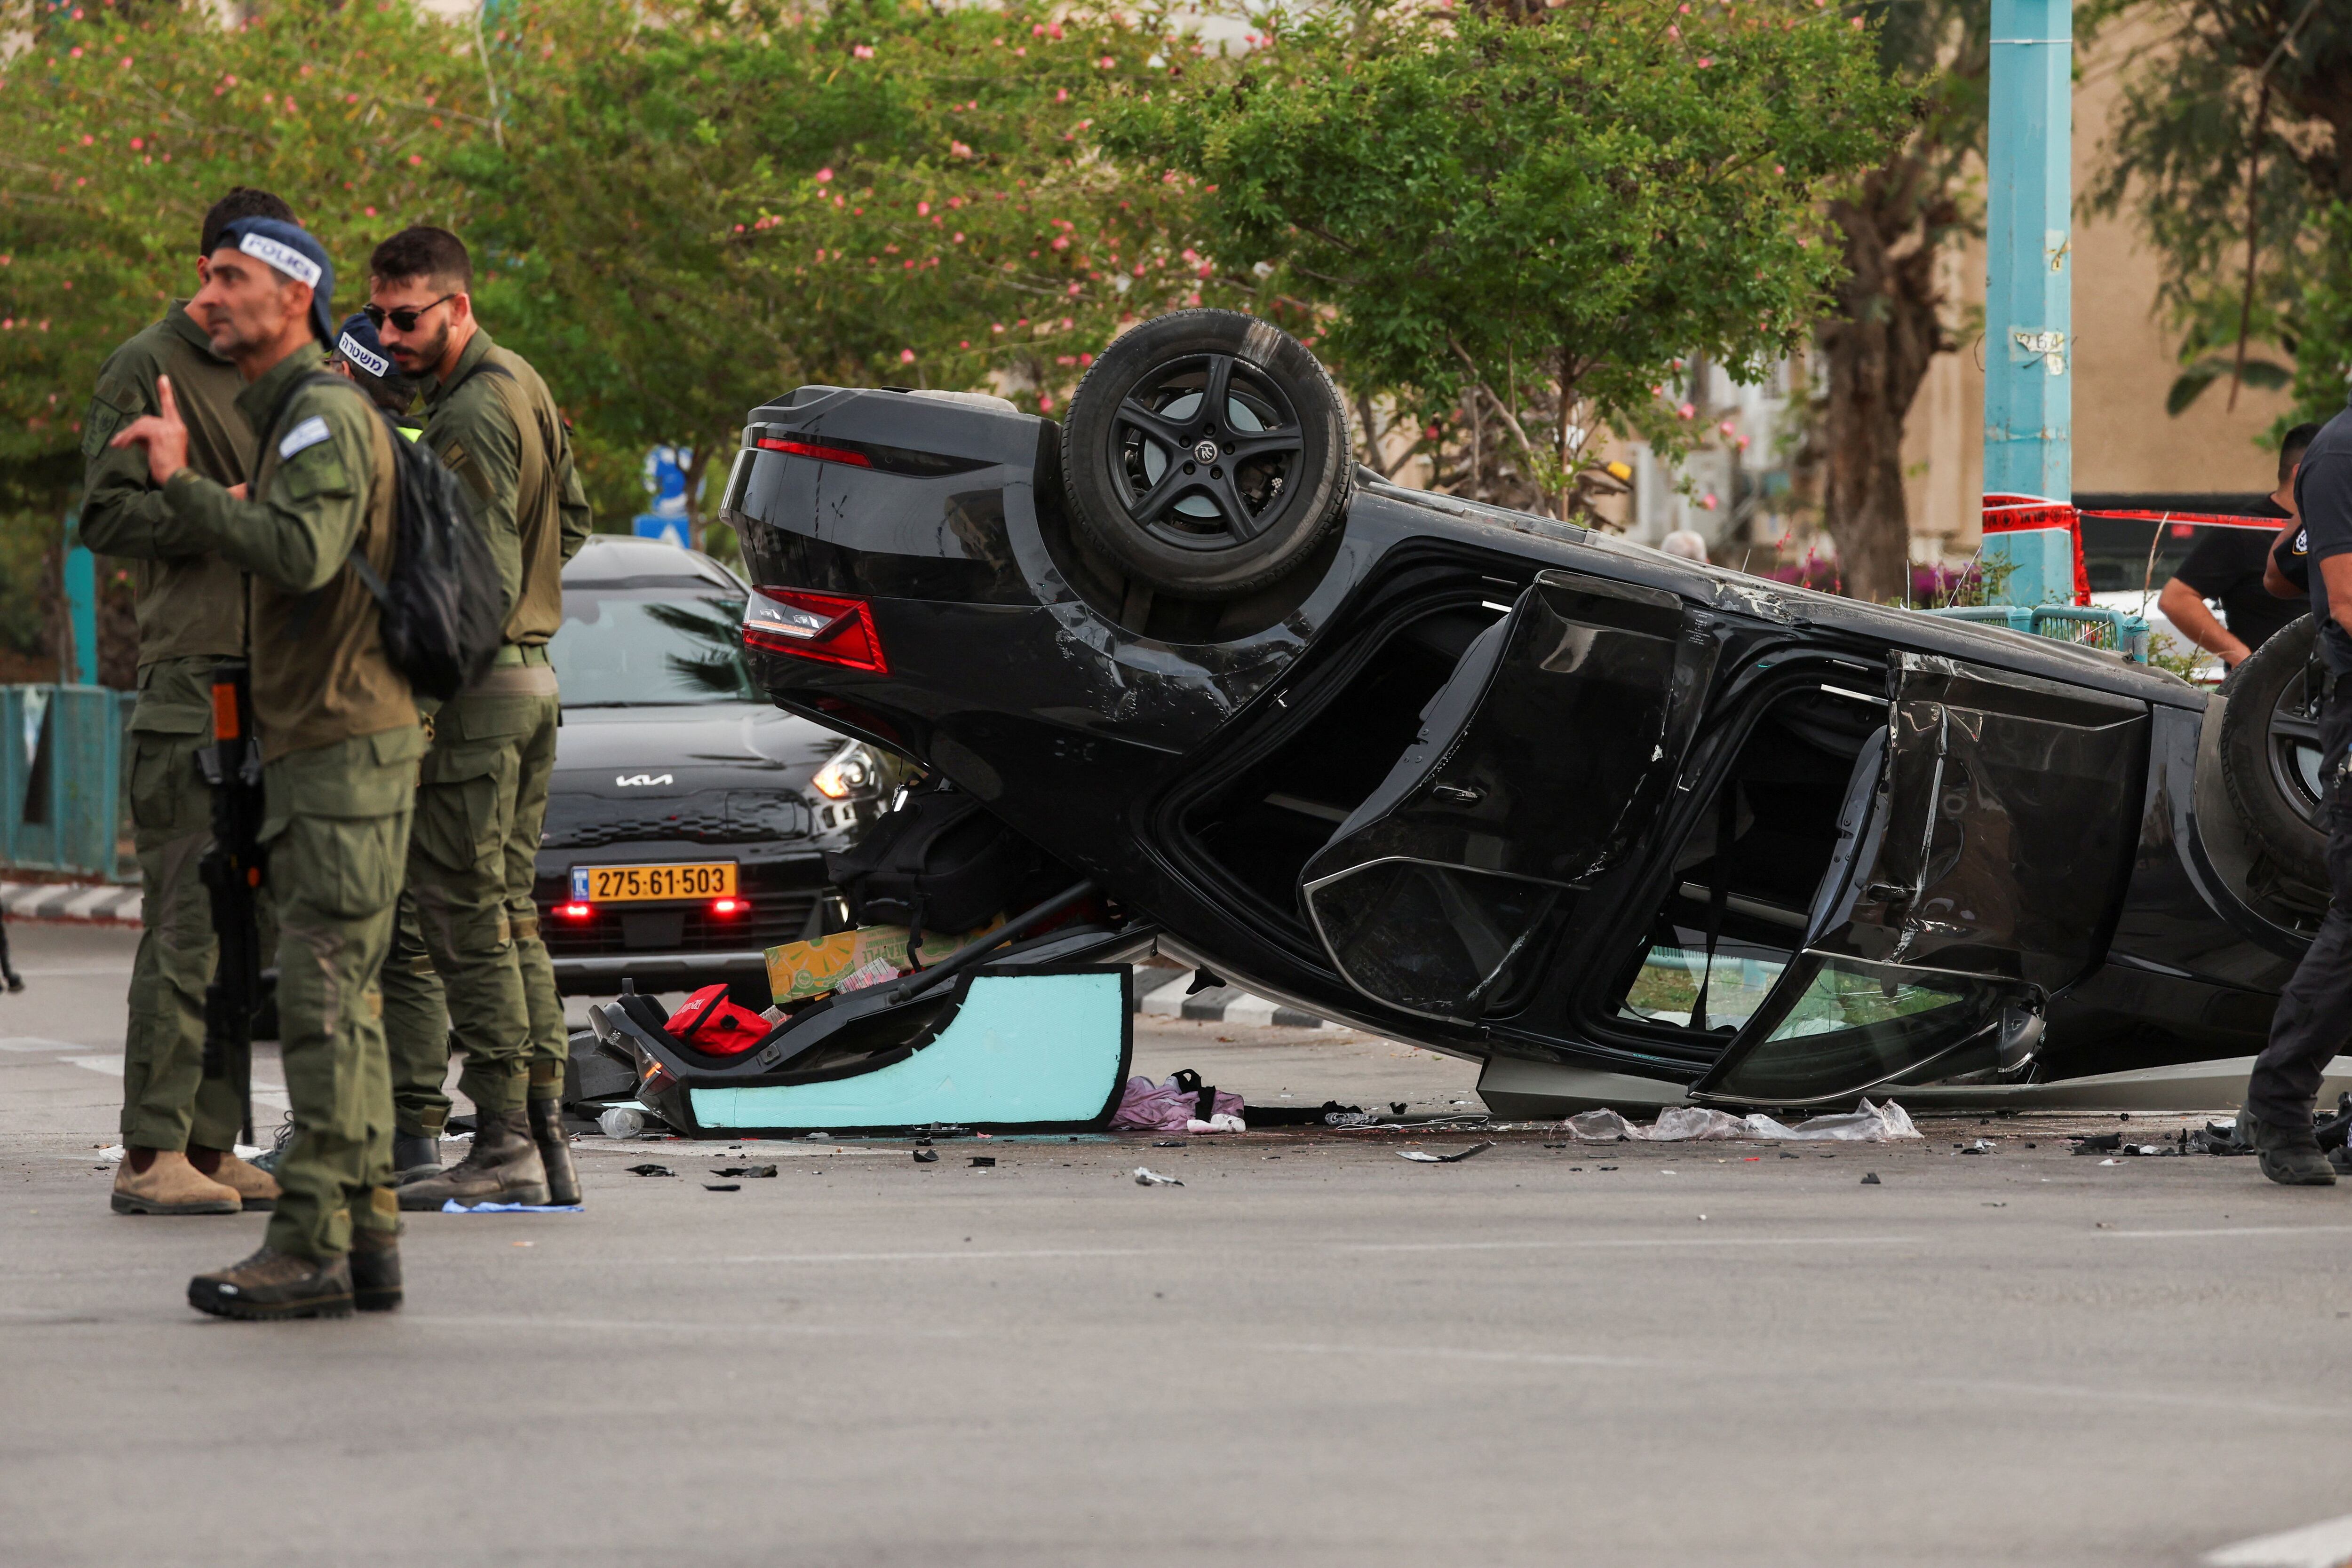 El vehículo se había saltado una luz roja (REUTERS/Shannon Stapleton)